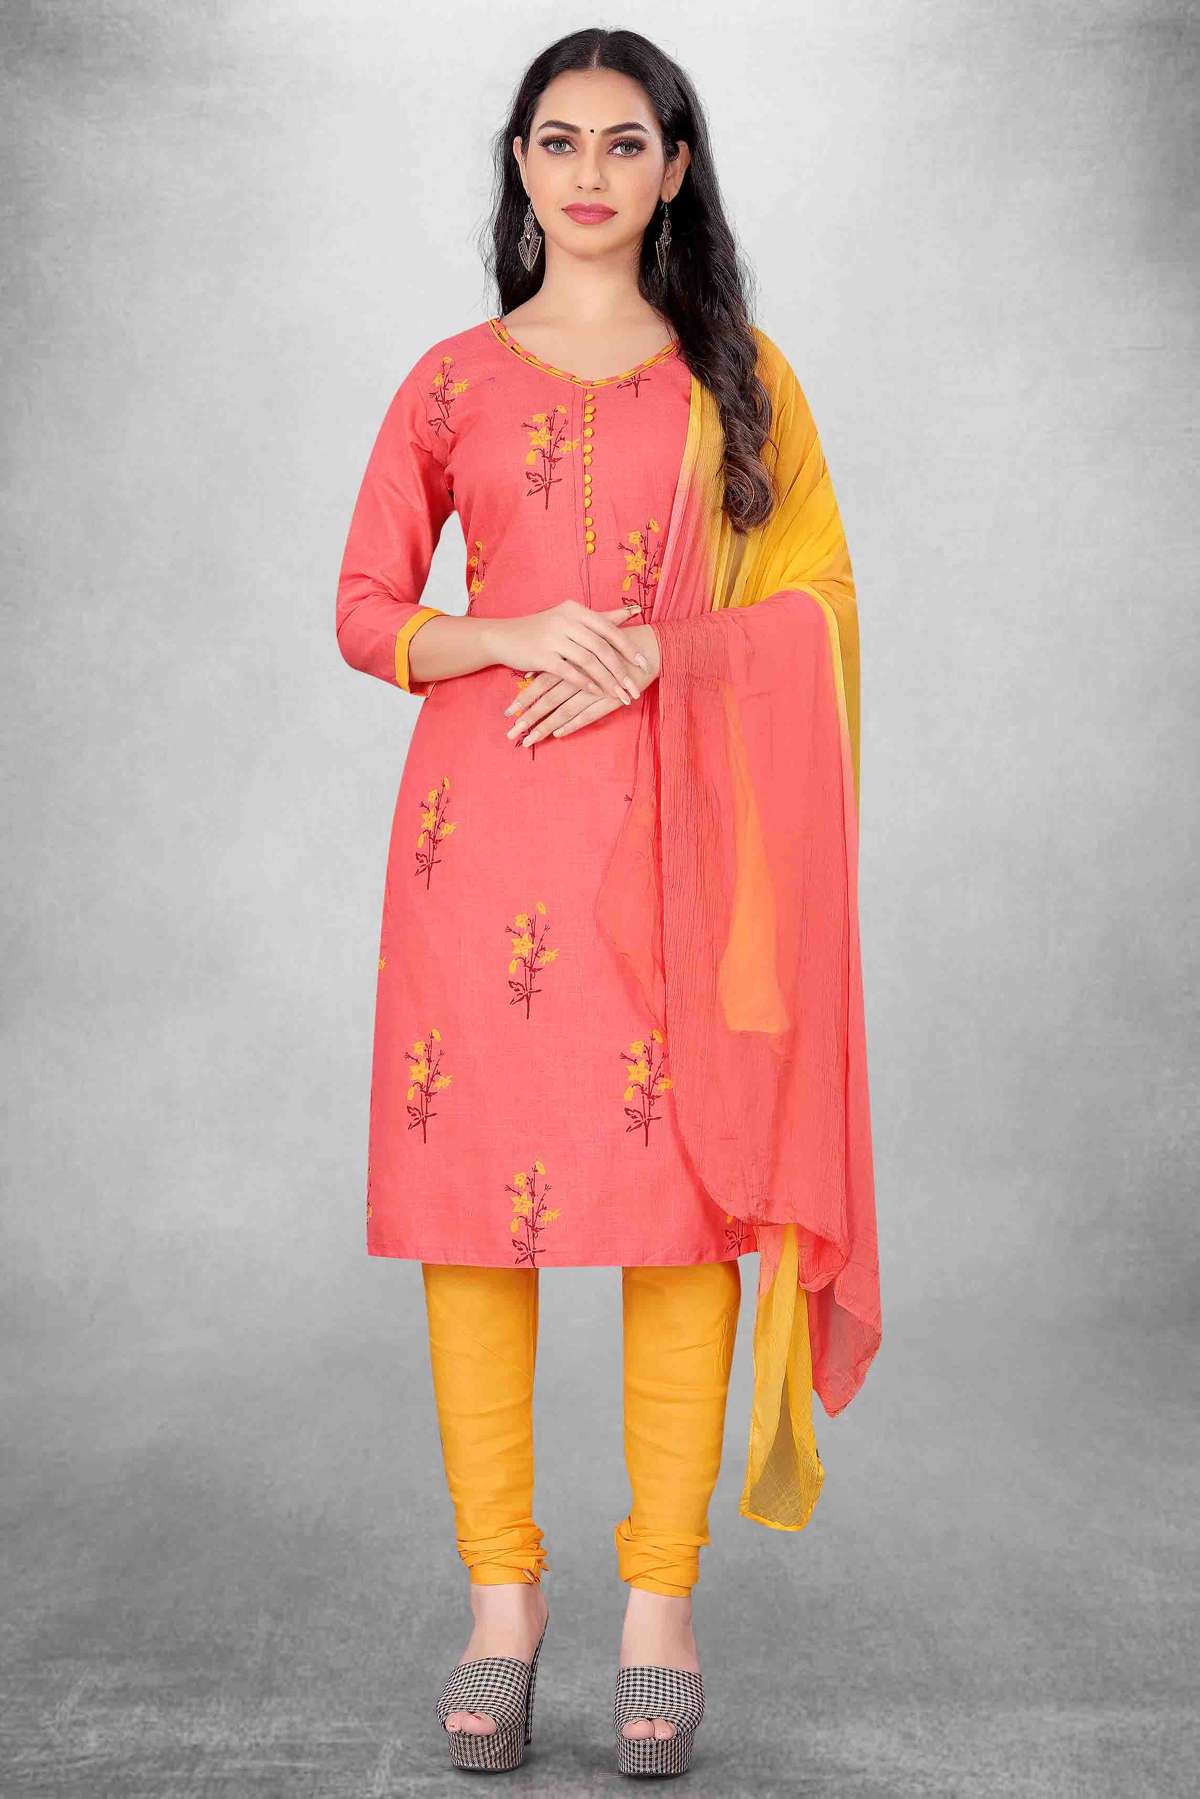 Unstitched Cotton Slub Printed Churidar Suit In Peach Colour - US3234407